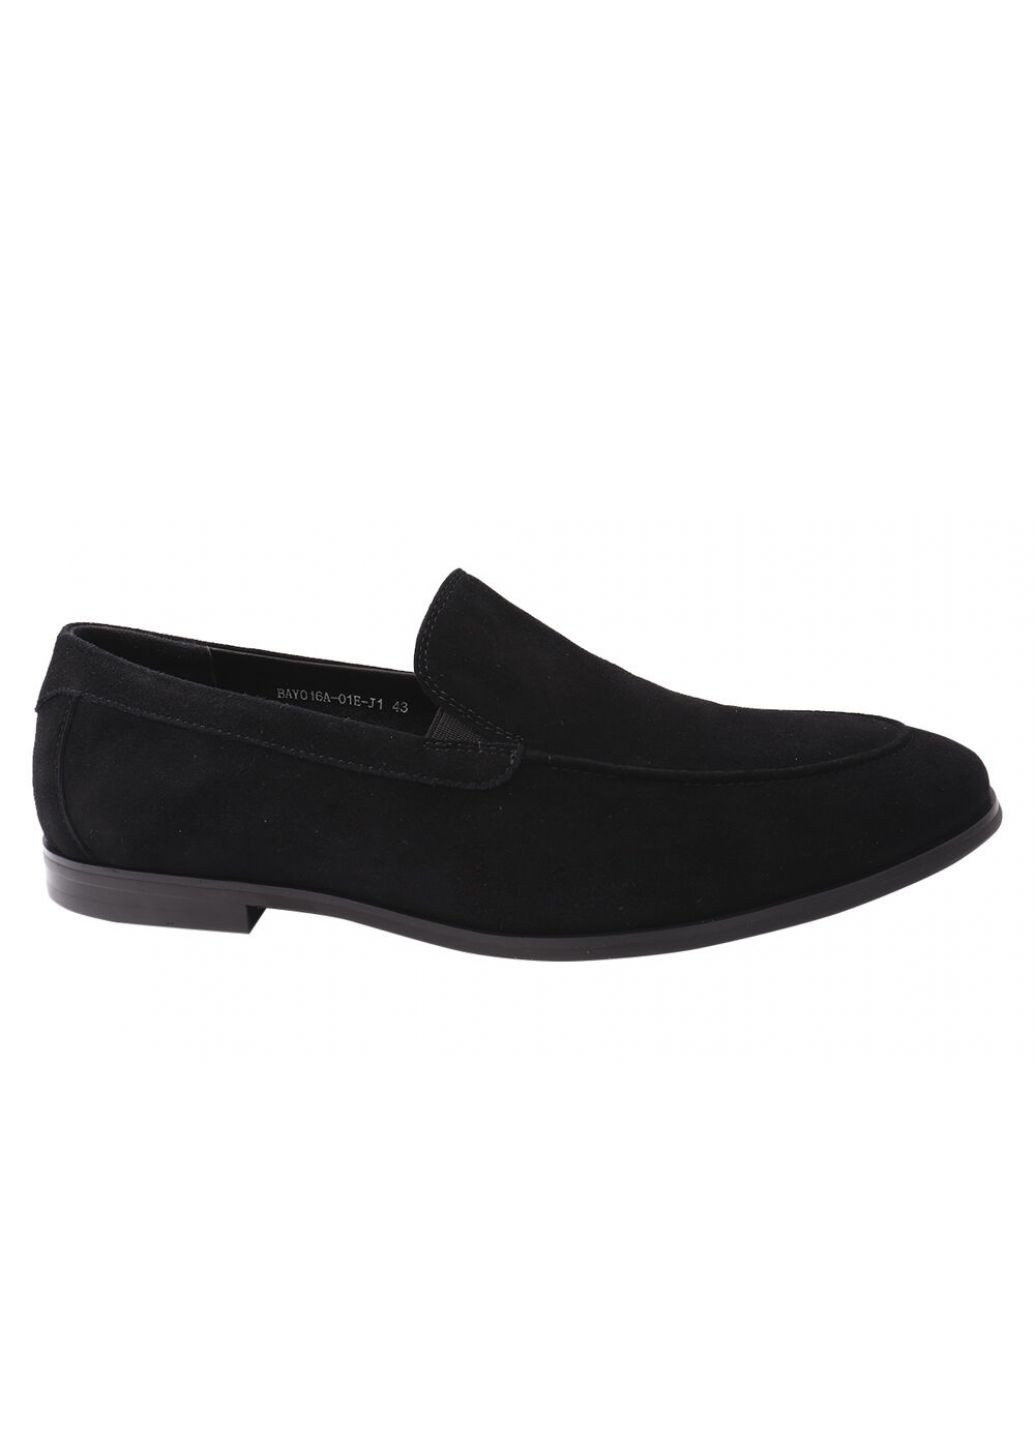 Черные туфли мужские из натуральной кожы,на низком ходу,черные, Basconi